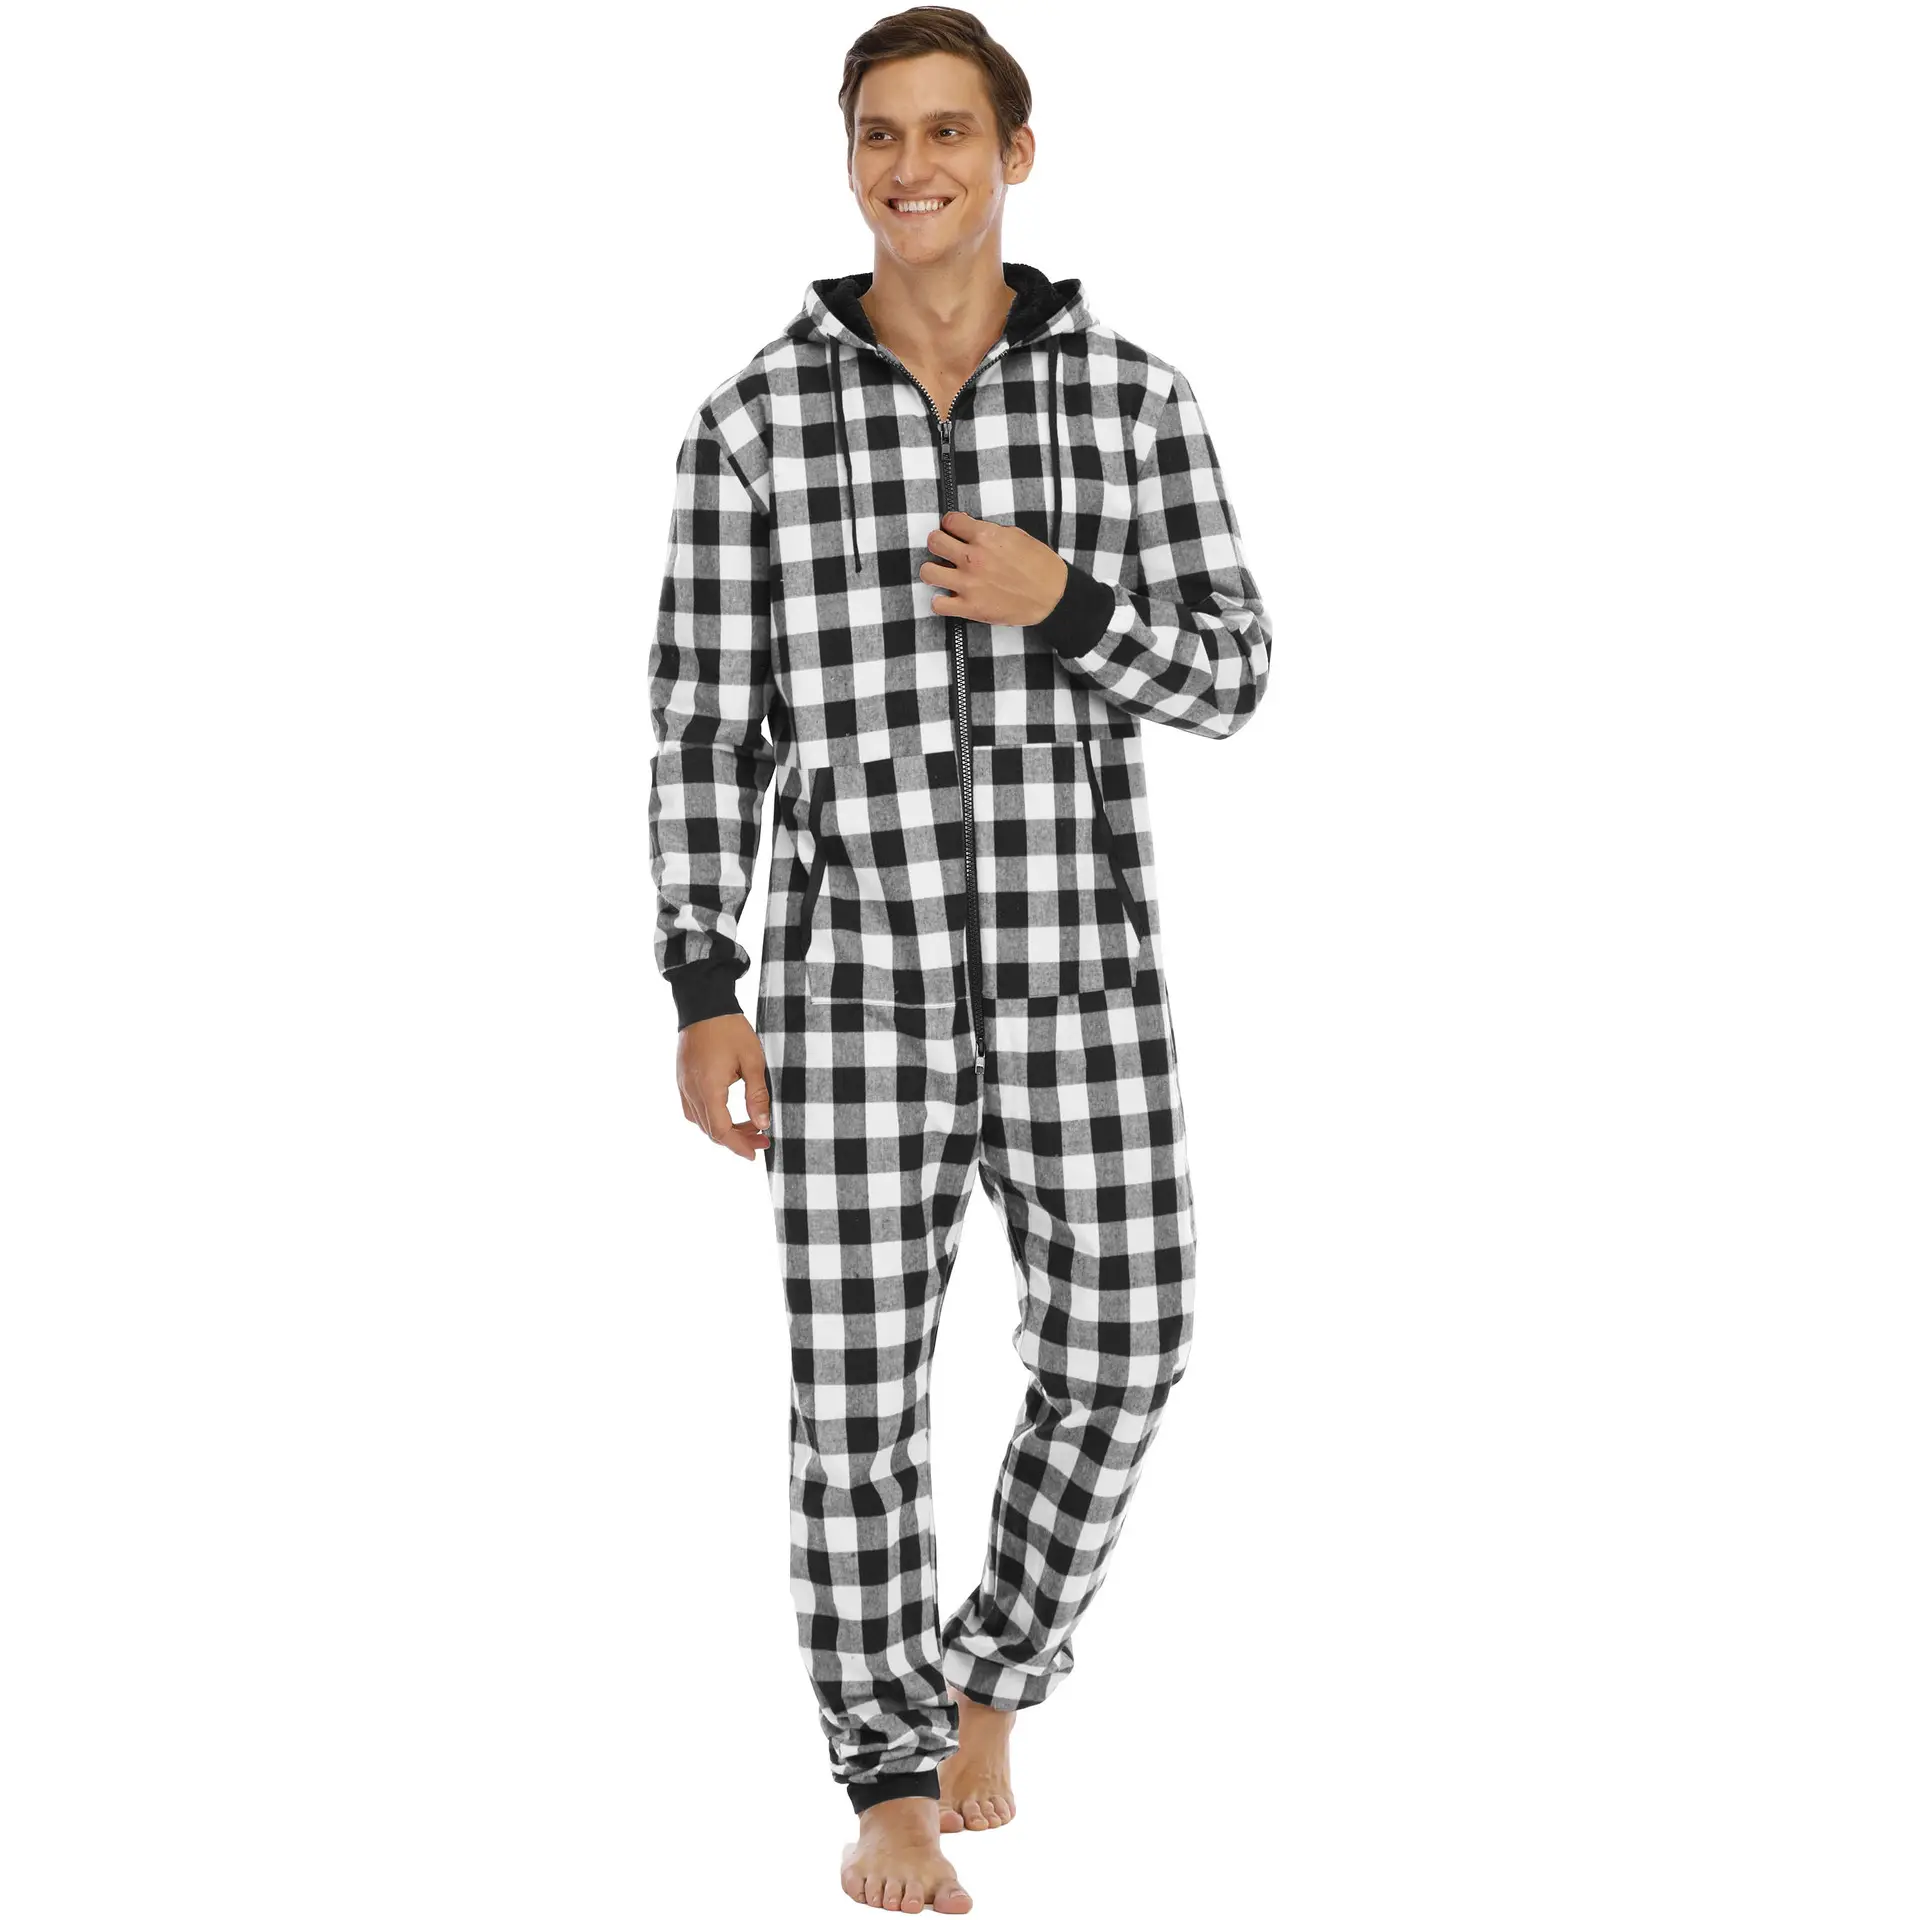 Fabricación de pijamas de lujo para hombre, ropa de dormir cálida, mono, pijama